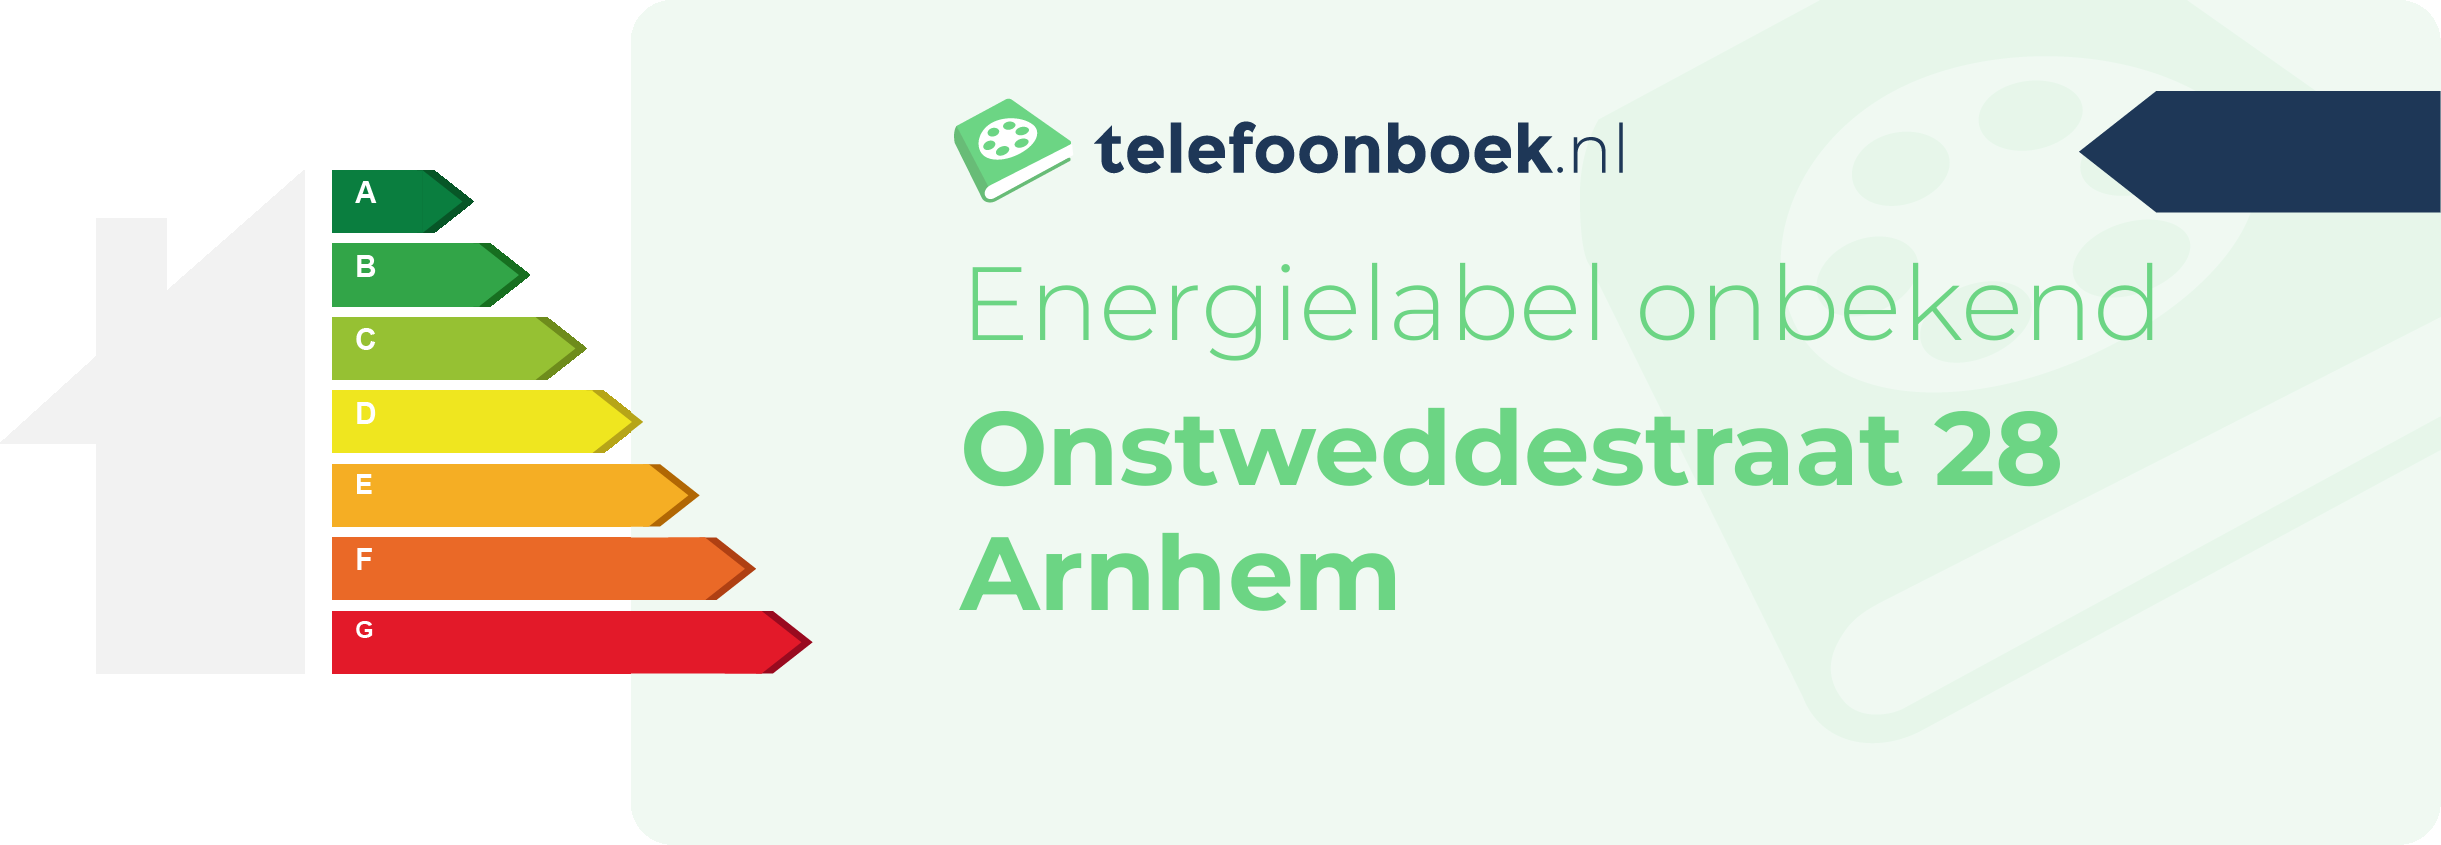 Energielabel Onstweddestraat 28 Arnhem